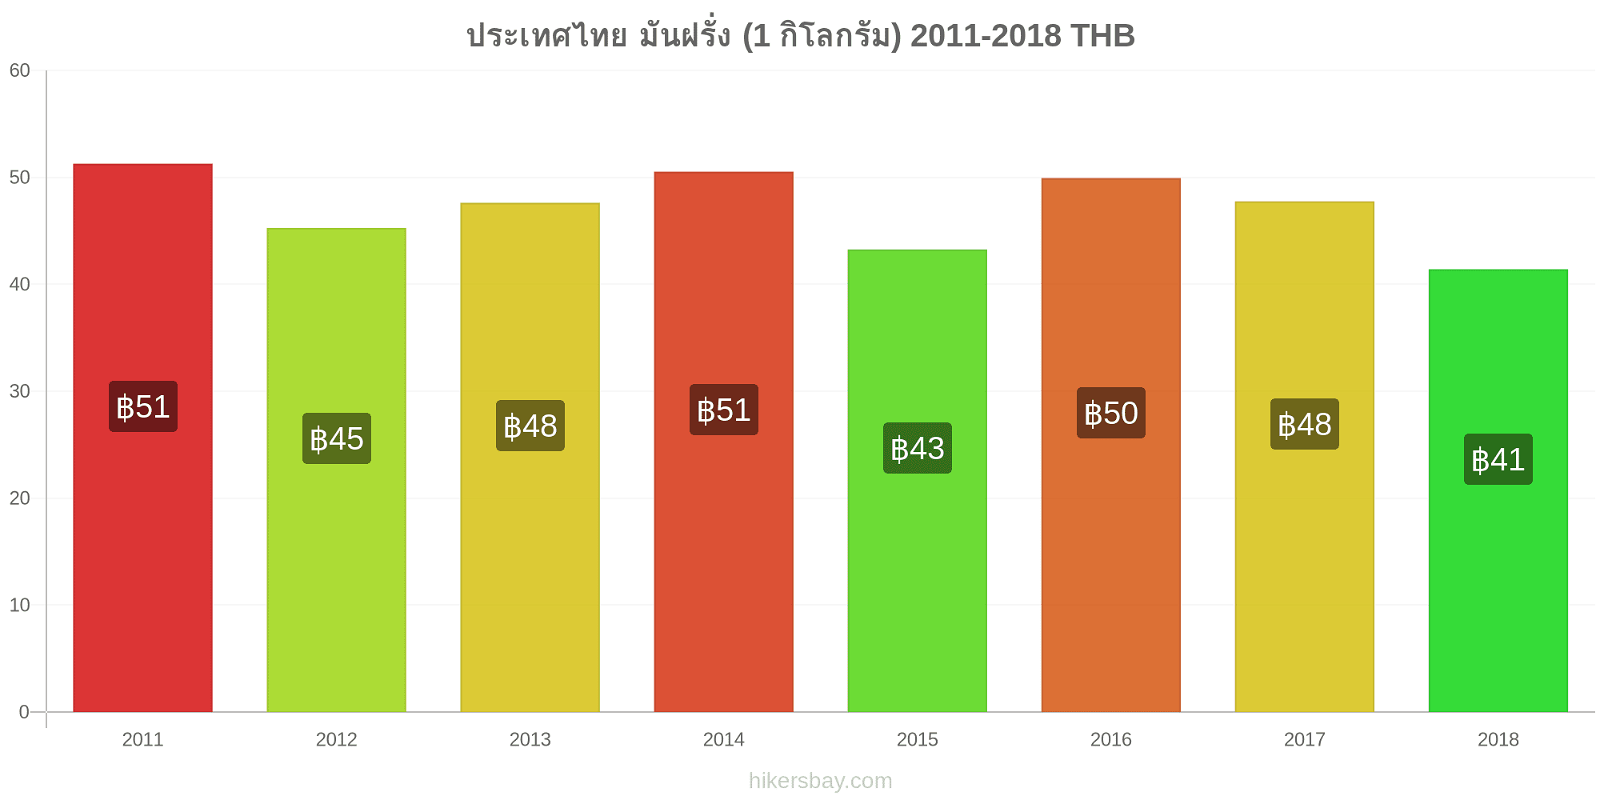 ประเทศไทย การเปลี่ยนแปลงราคา มันฝรั่ง (1 กิโลกรัม) hikersbay.com